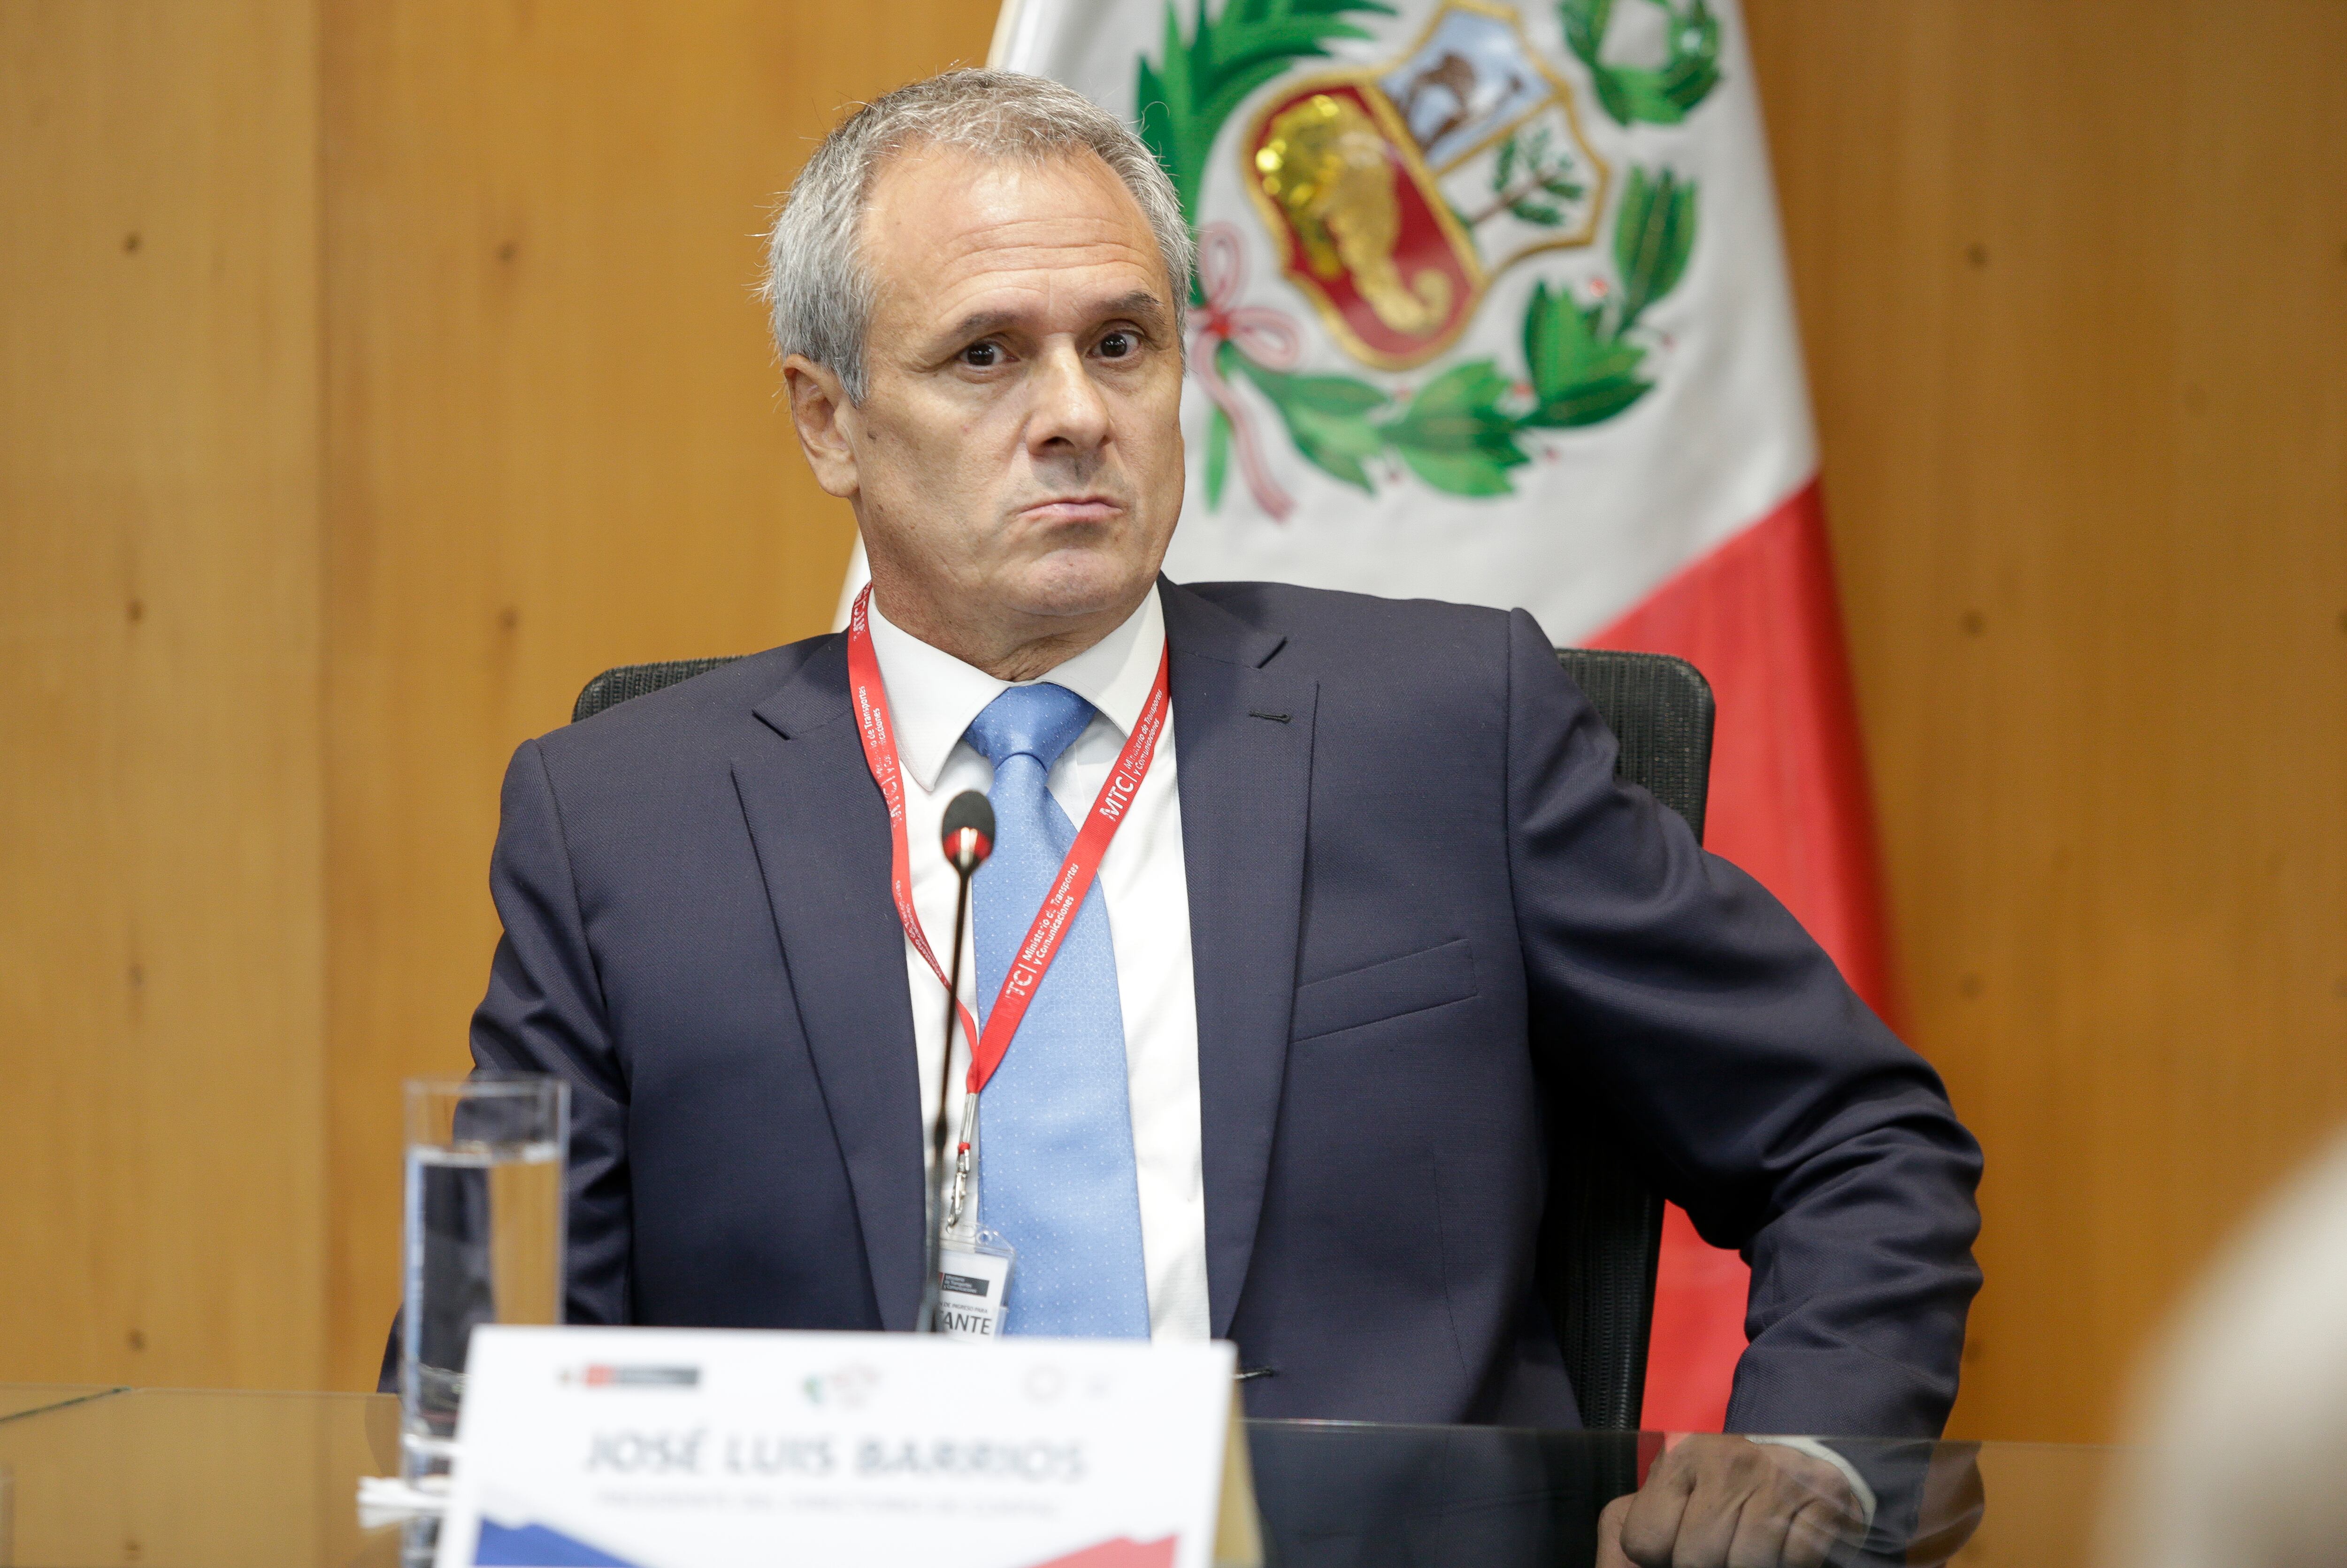 José Luis Barrios Espinosa,  presidente de Corpac, permanecerá en su cargo, al que llegó hace menos de un mes. Foto: César Bueno.